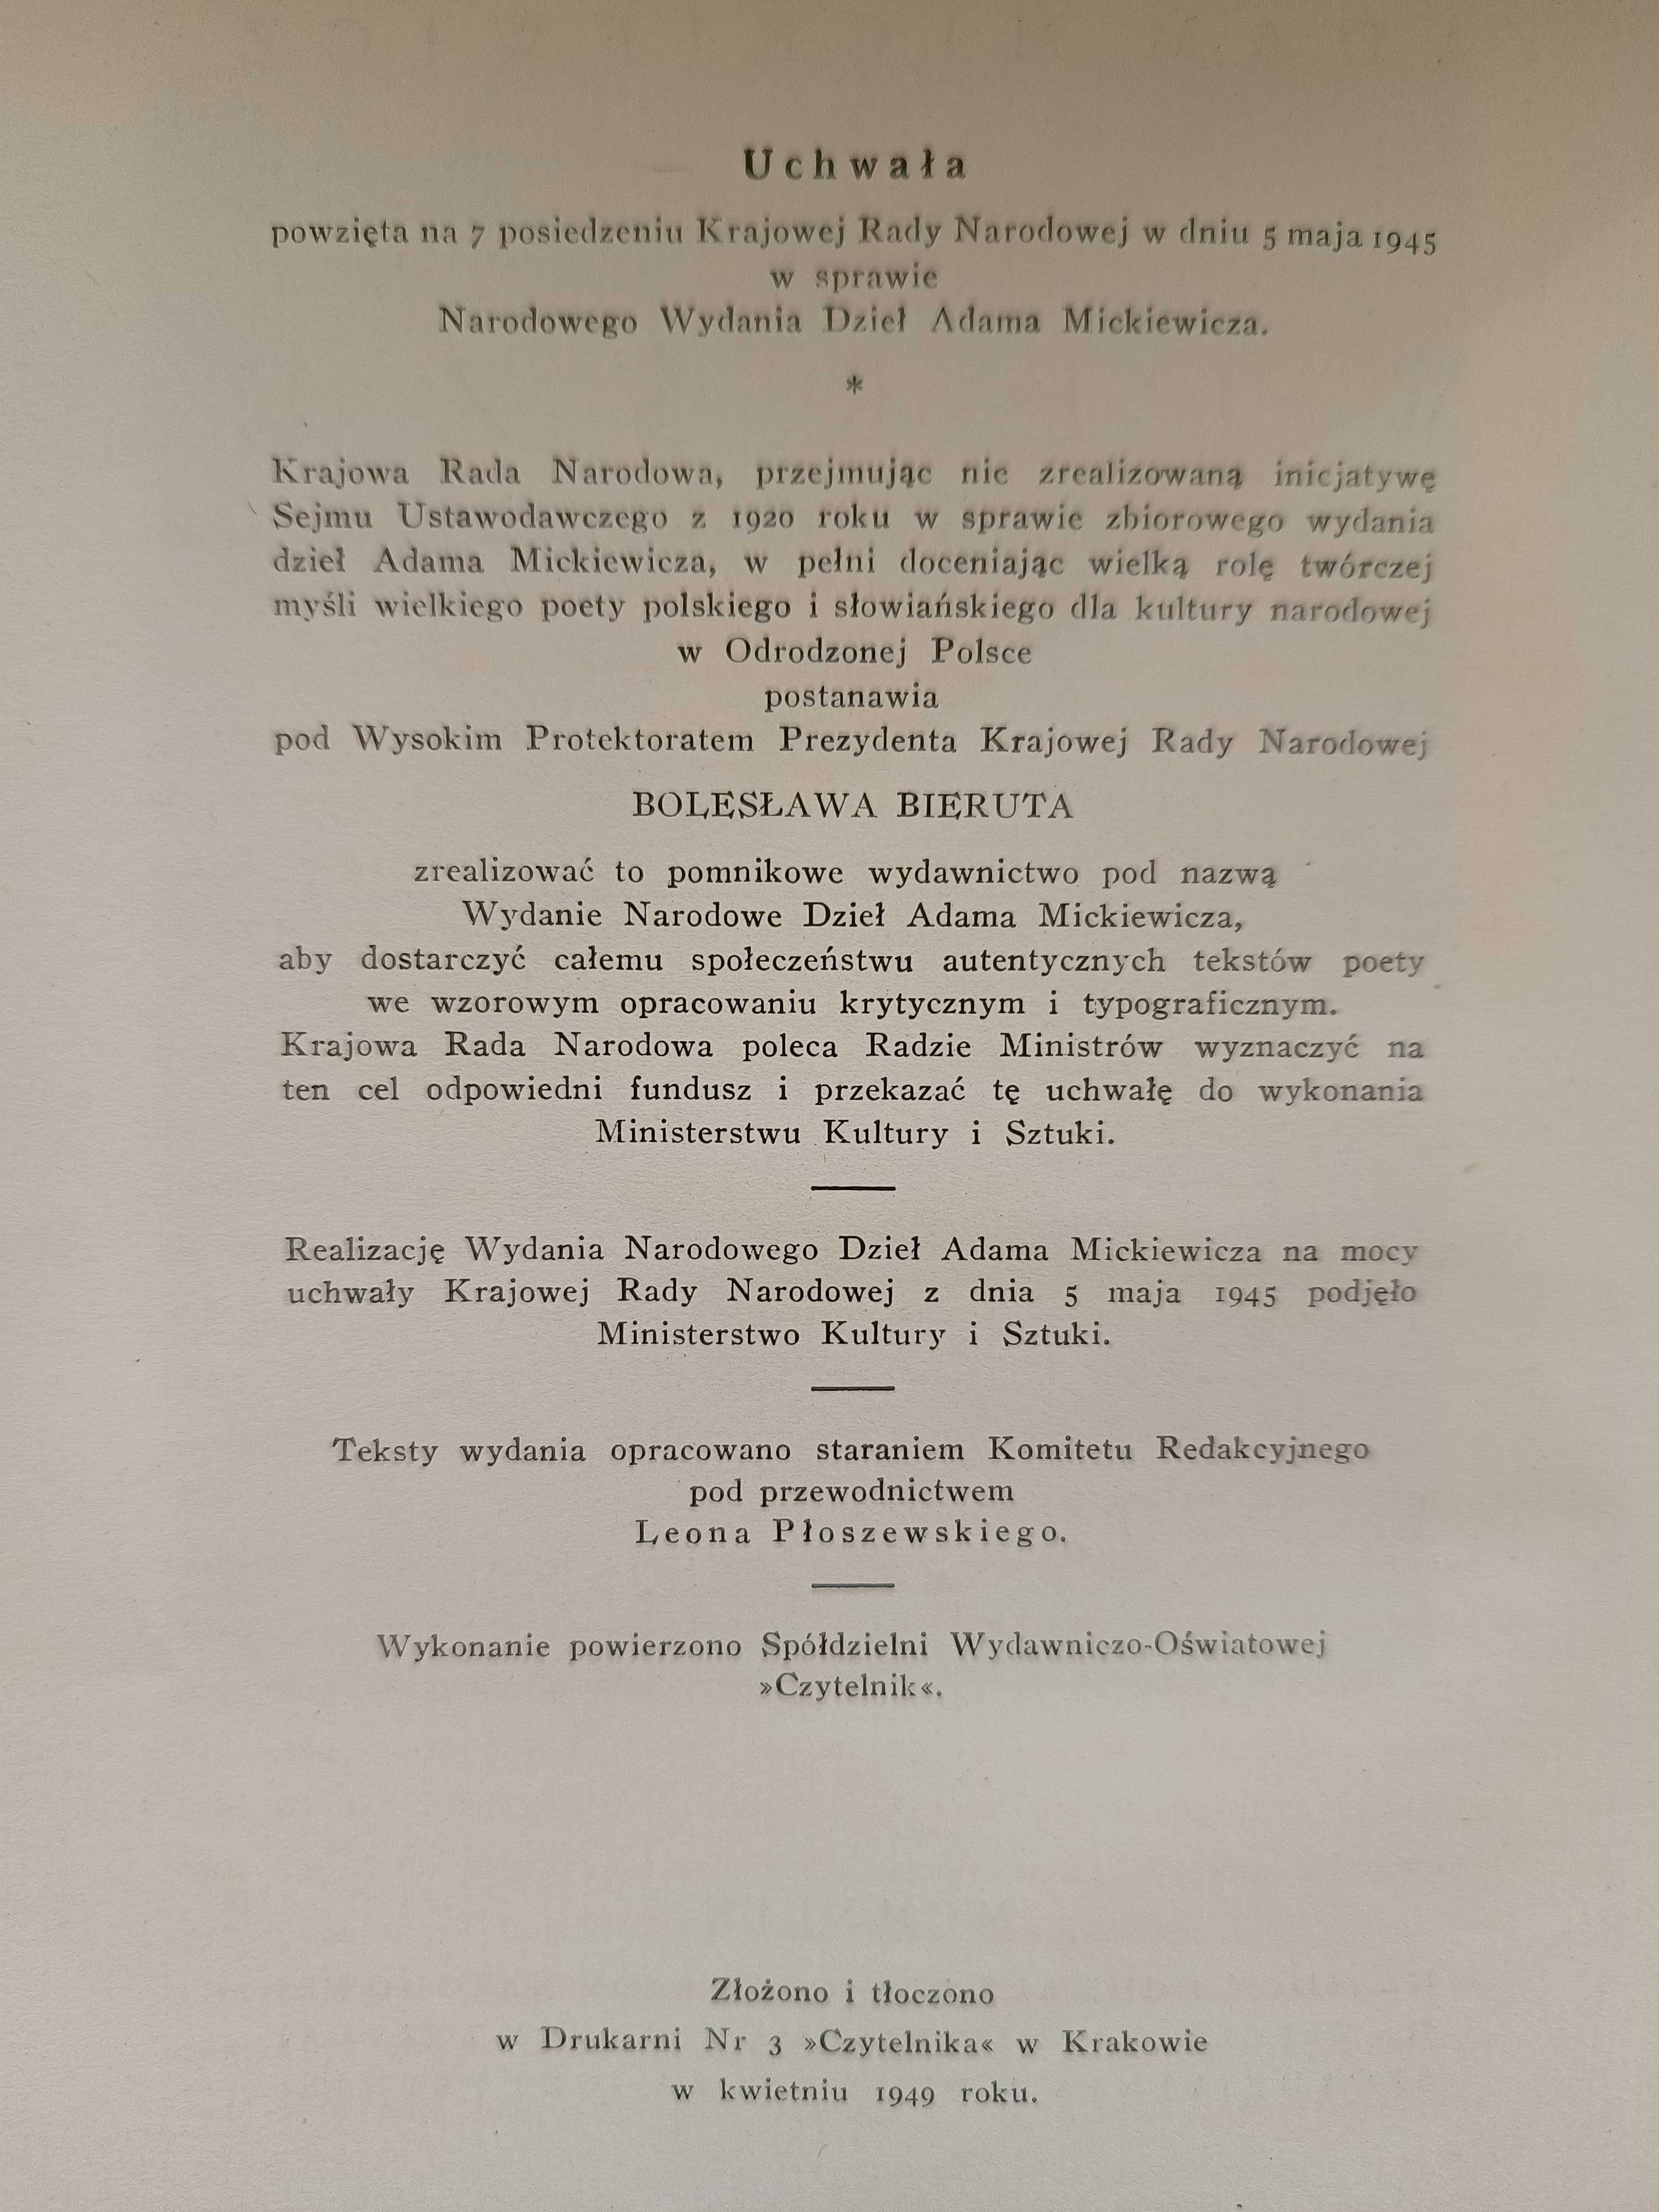 Komplet Dzieł Adama Mickiewicza – Wydanie narodowe 10-tomowe; 1949r.